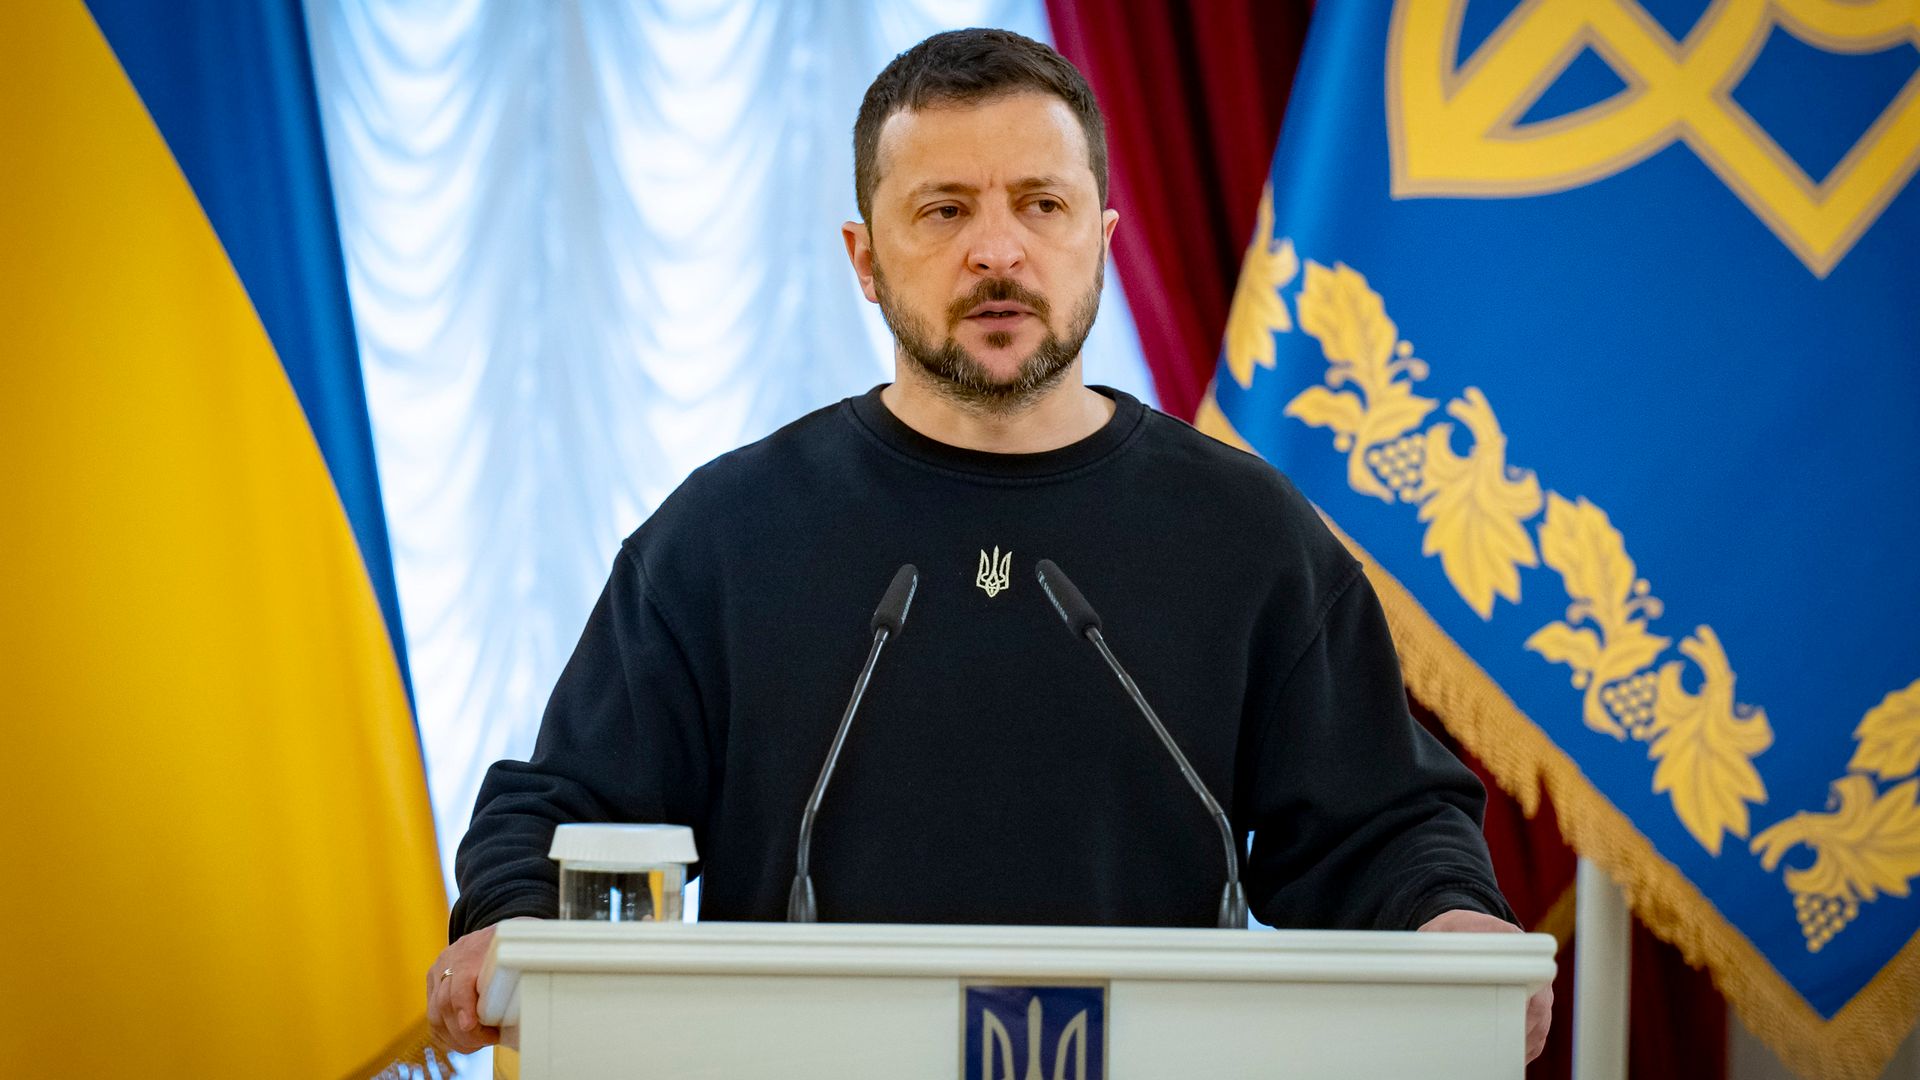 ukraine-krieg: wolodymyr selenskyj dankt den usa für »lebenswichtige hilfe«